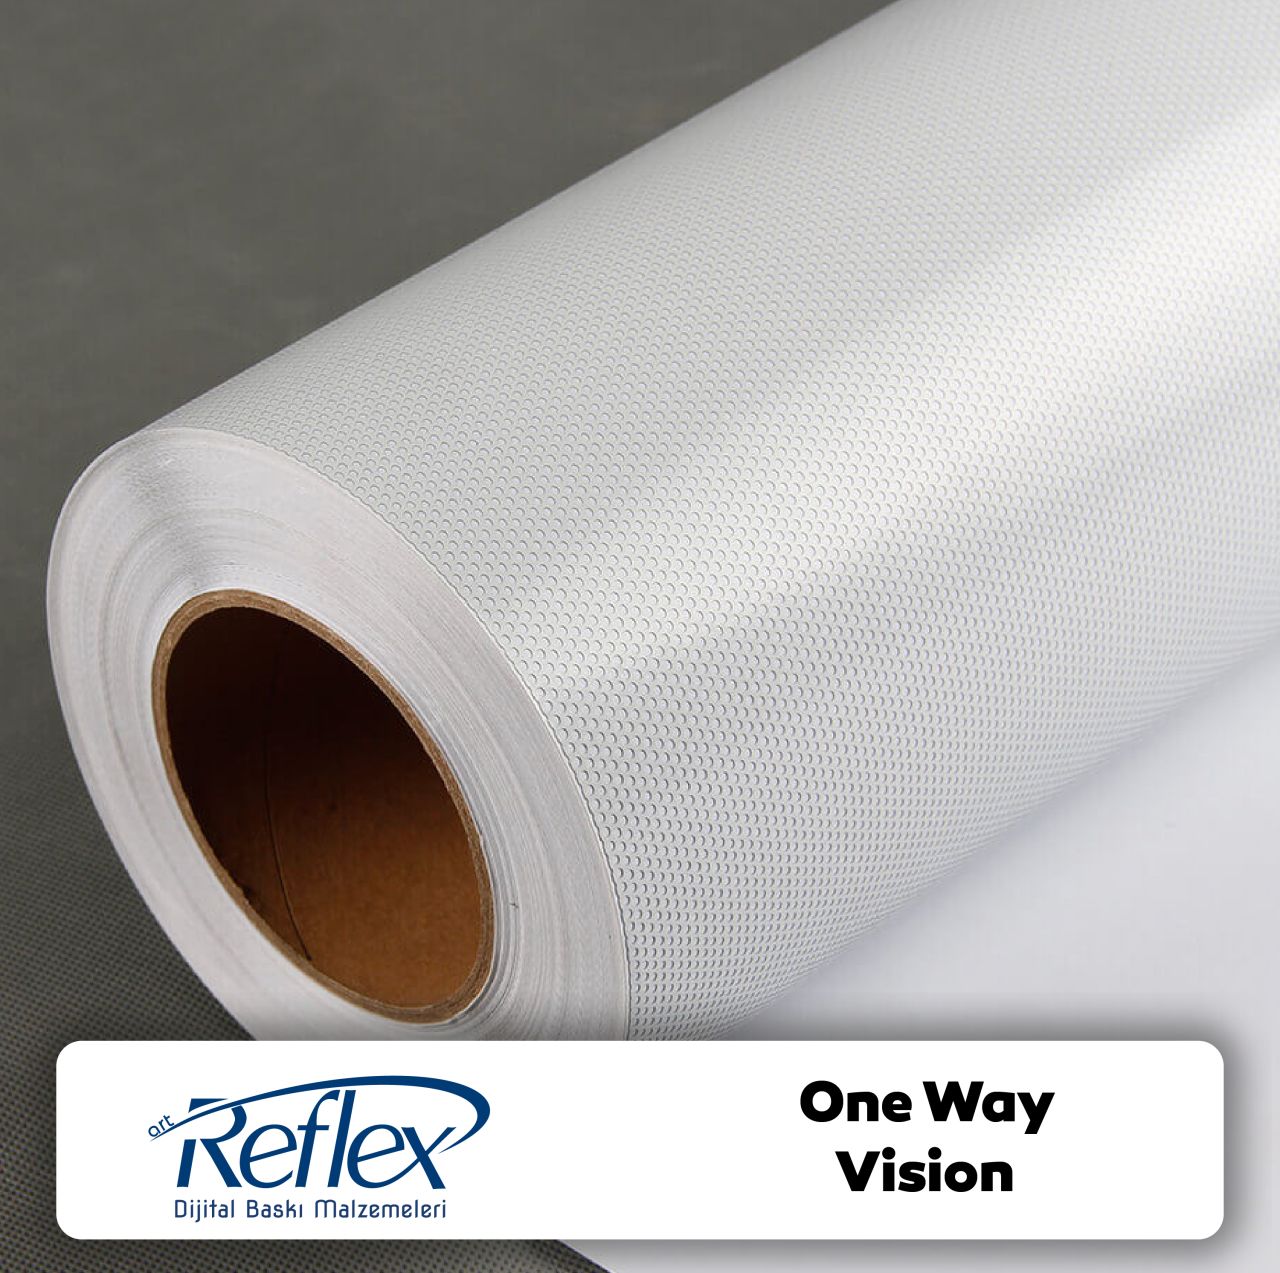 Reflex One Way Vision (140gr)